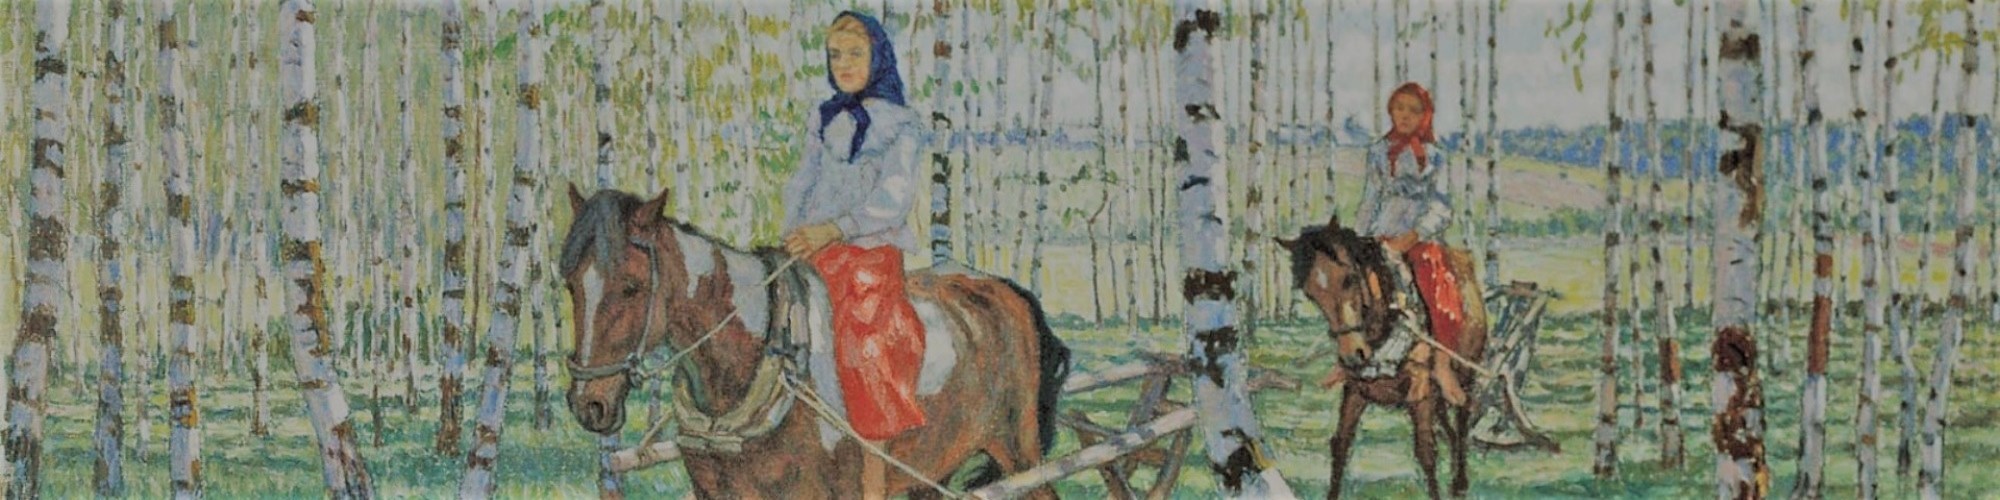 Богданов-Бельский Николай - картина На работу 1921